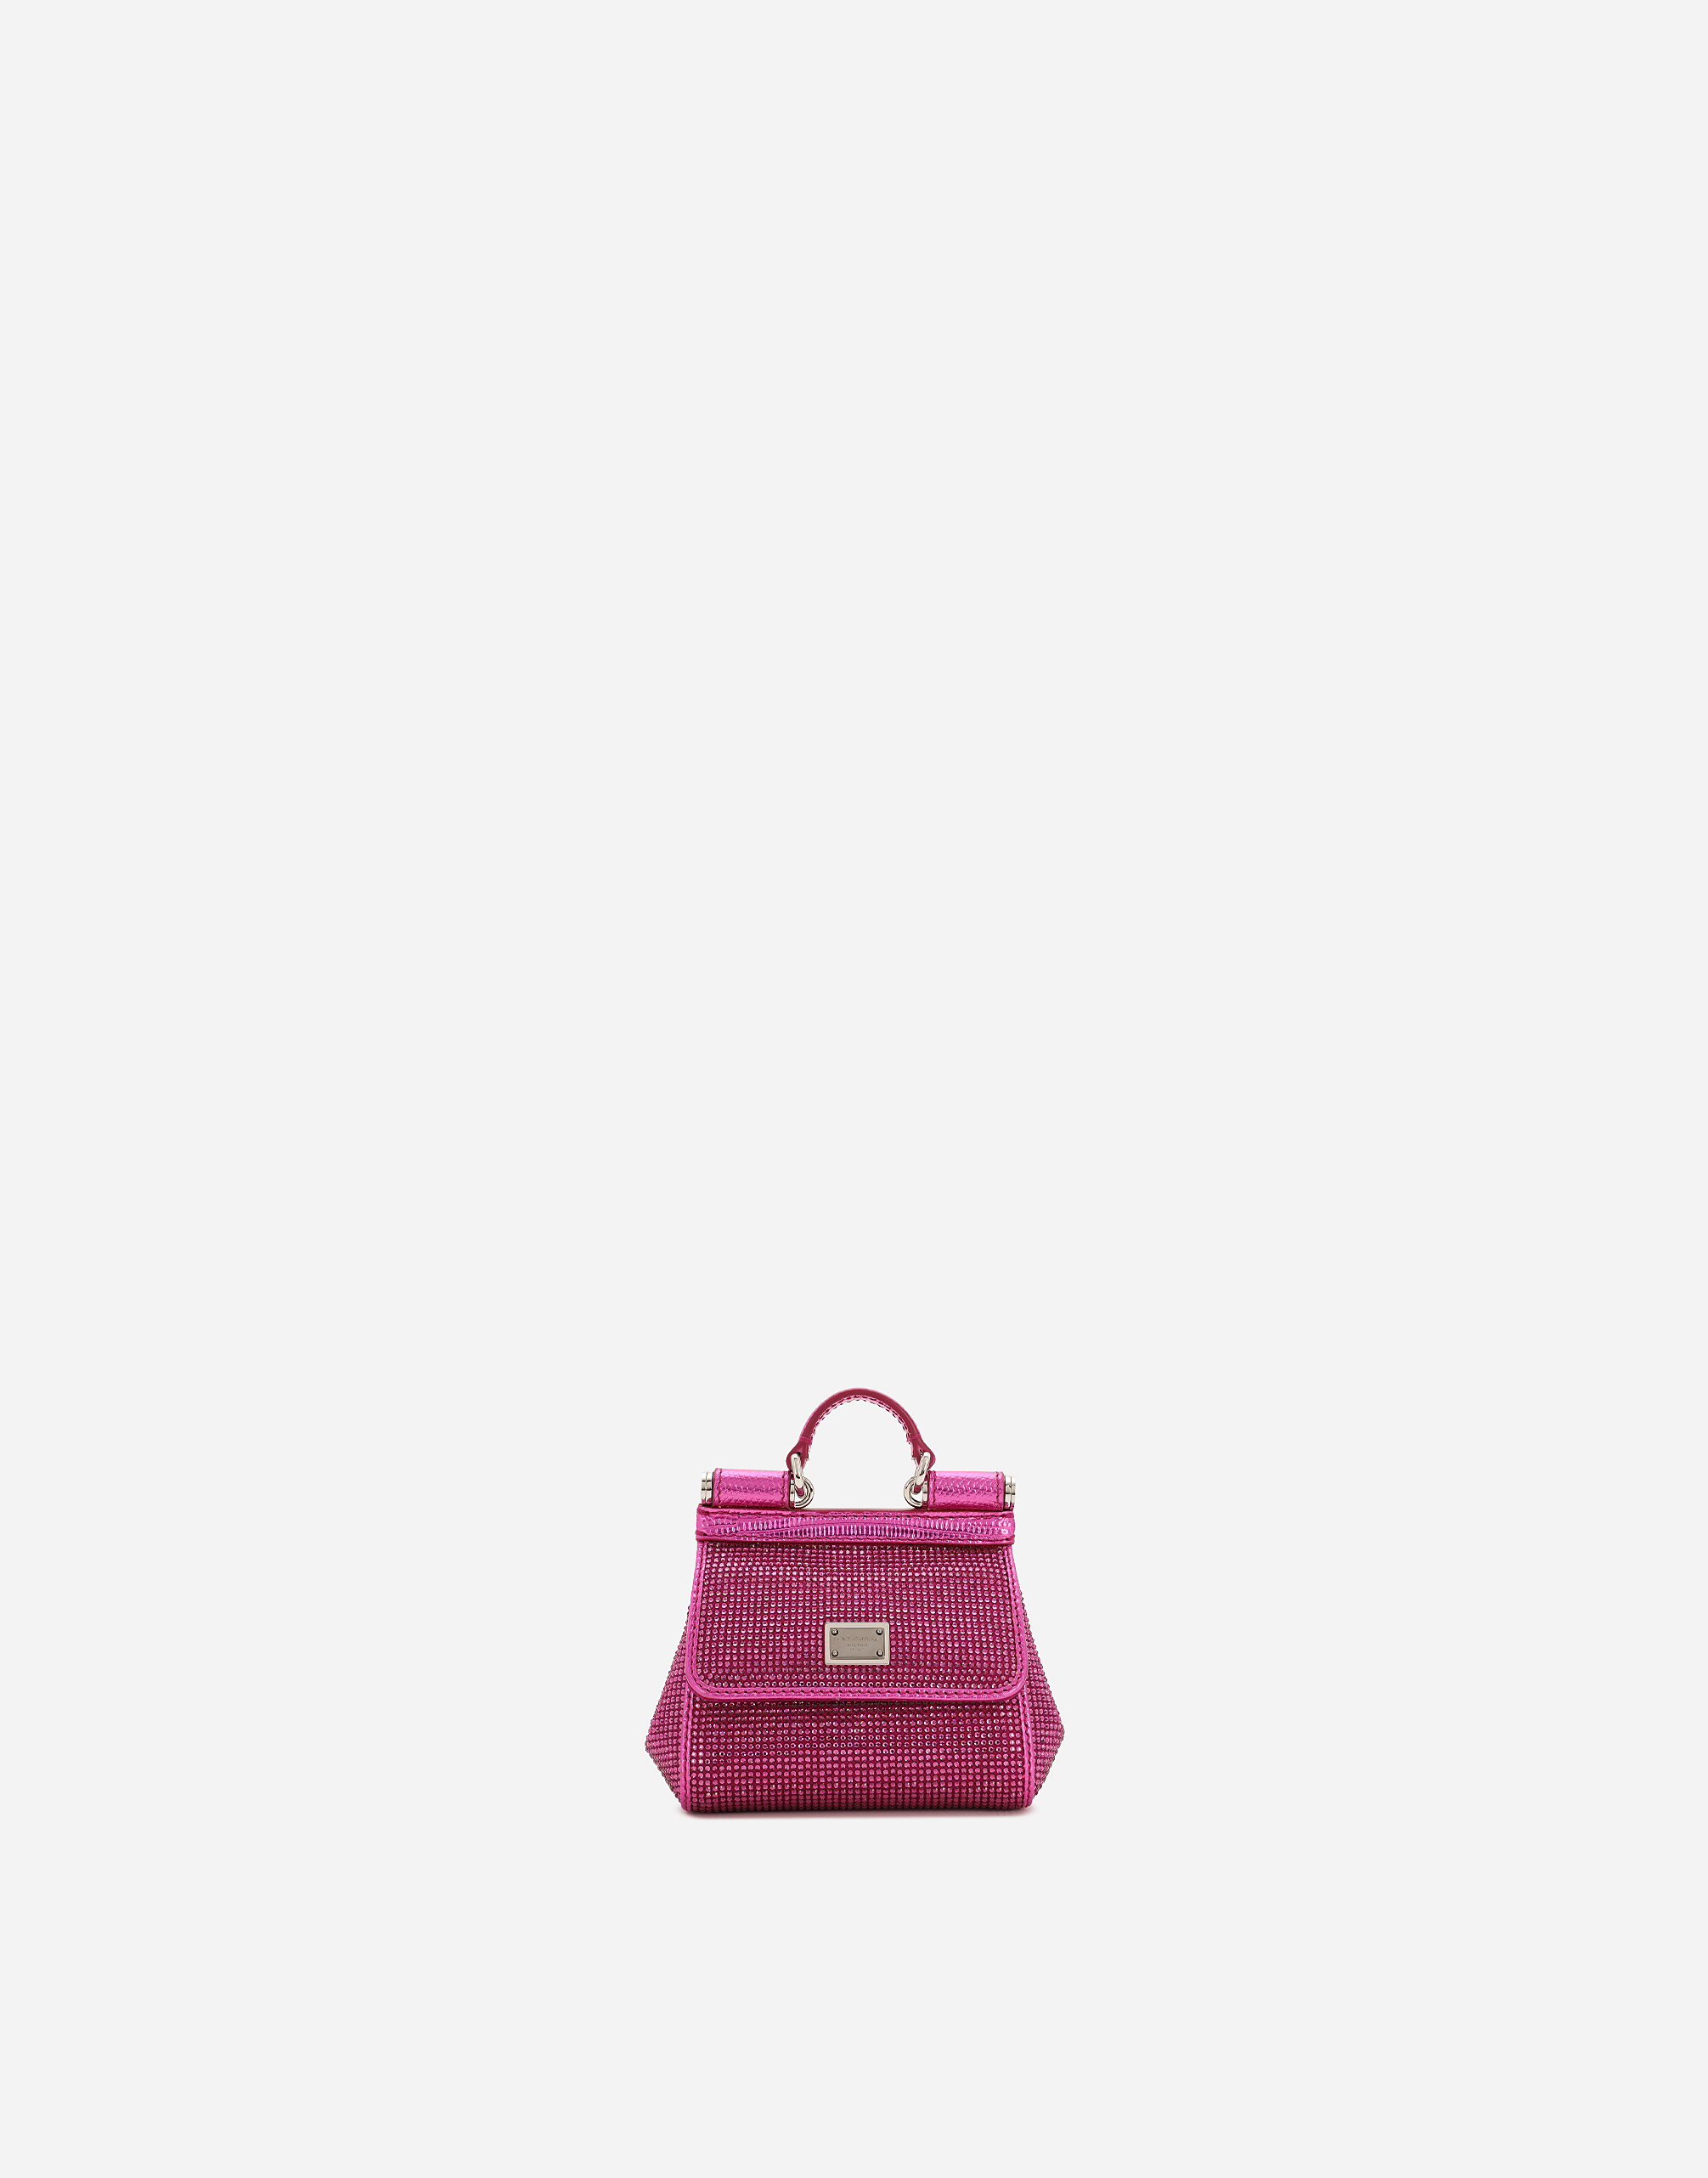 Dolce & Gabbana Mini Sicily Handbag In Fuchsia